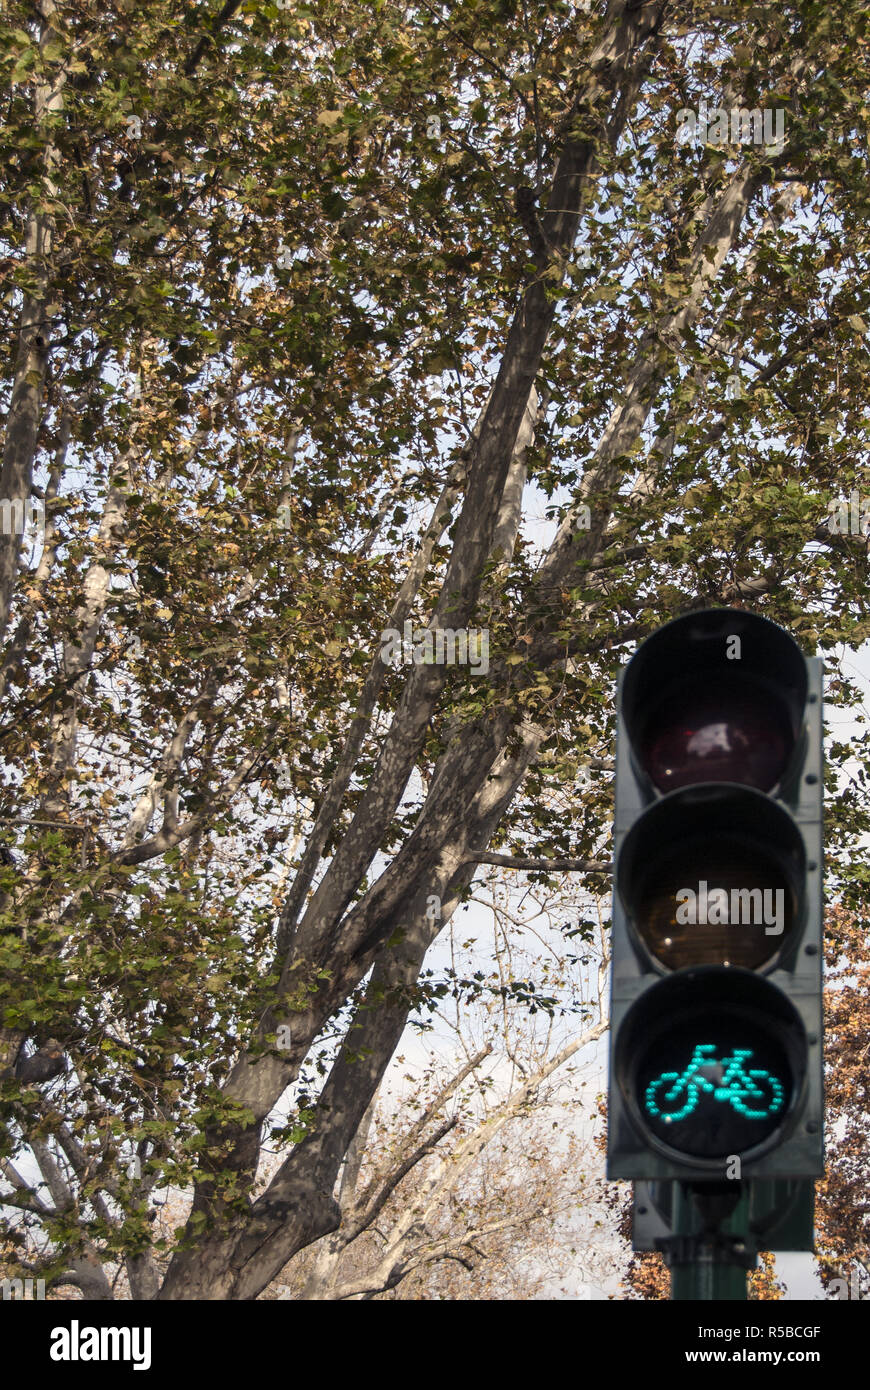 Bike Ampel auf Baum Hintergrund. Der Radweg. Bike Ampel ist grün. Die Bäume im Herbst Hintergrund unterstreicht das Konzept. Stockfoto